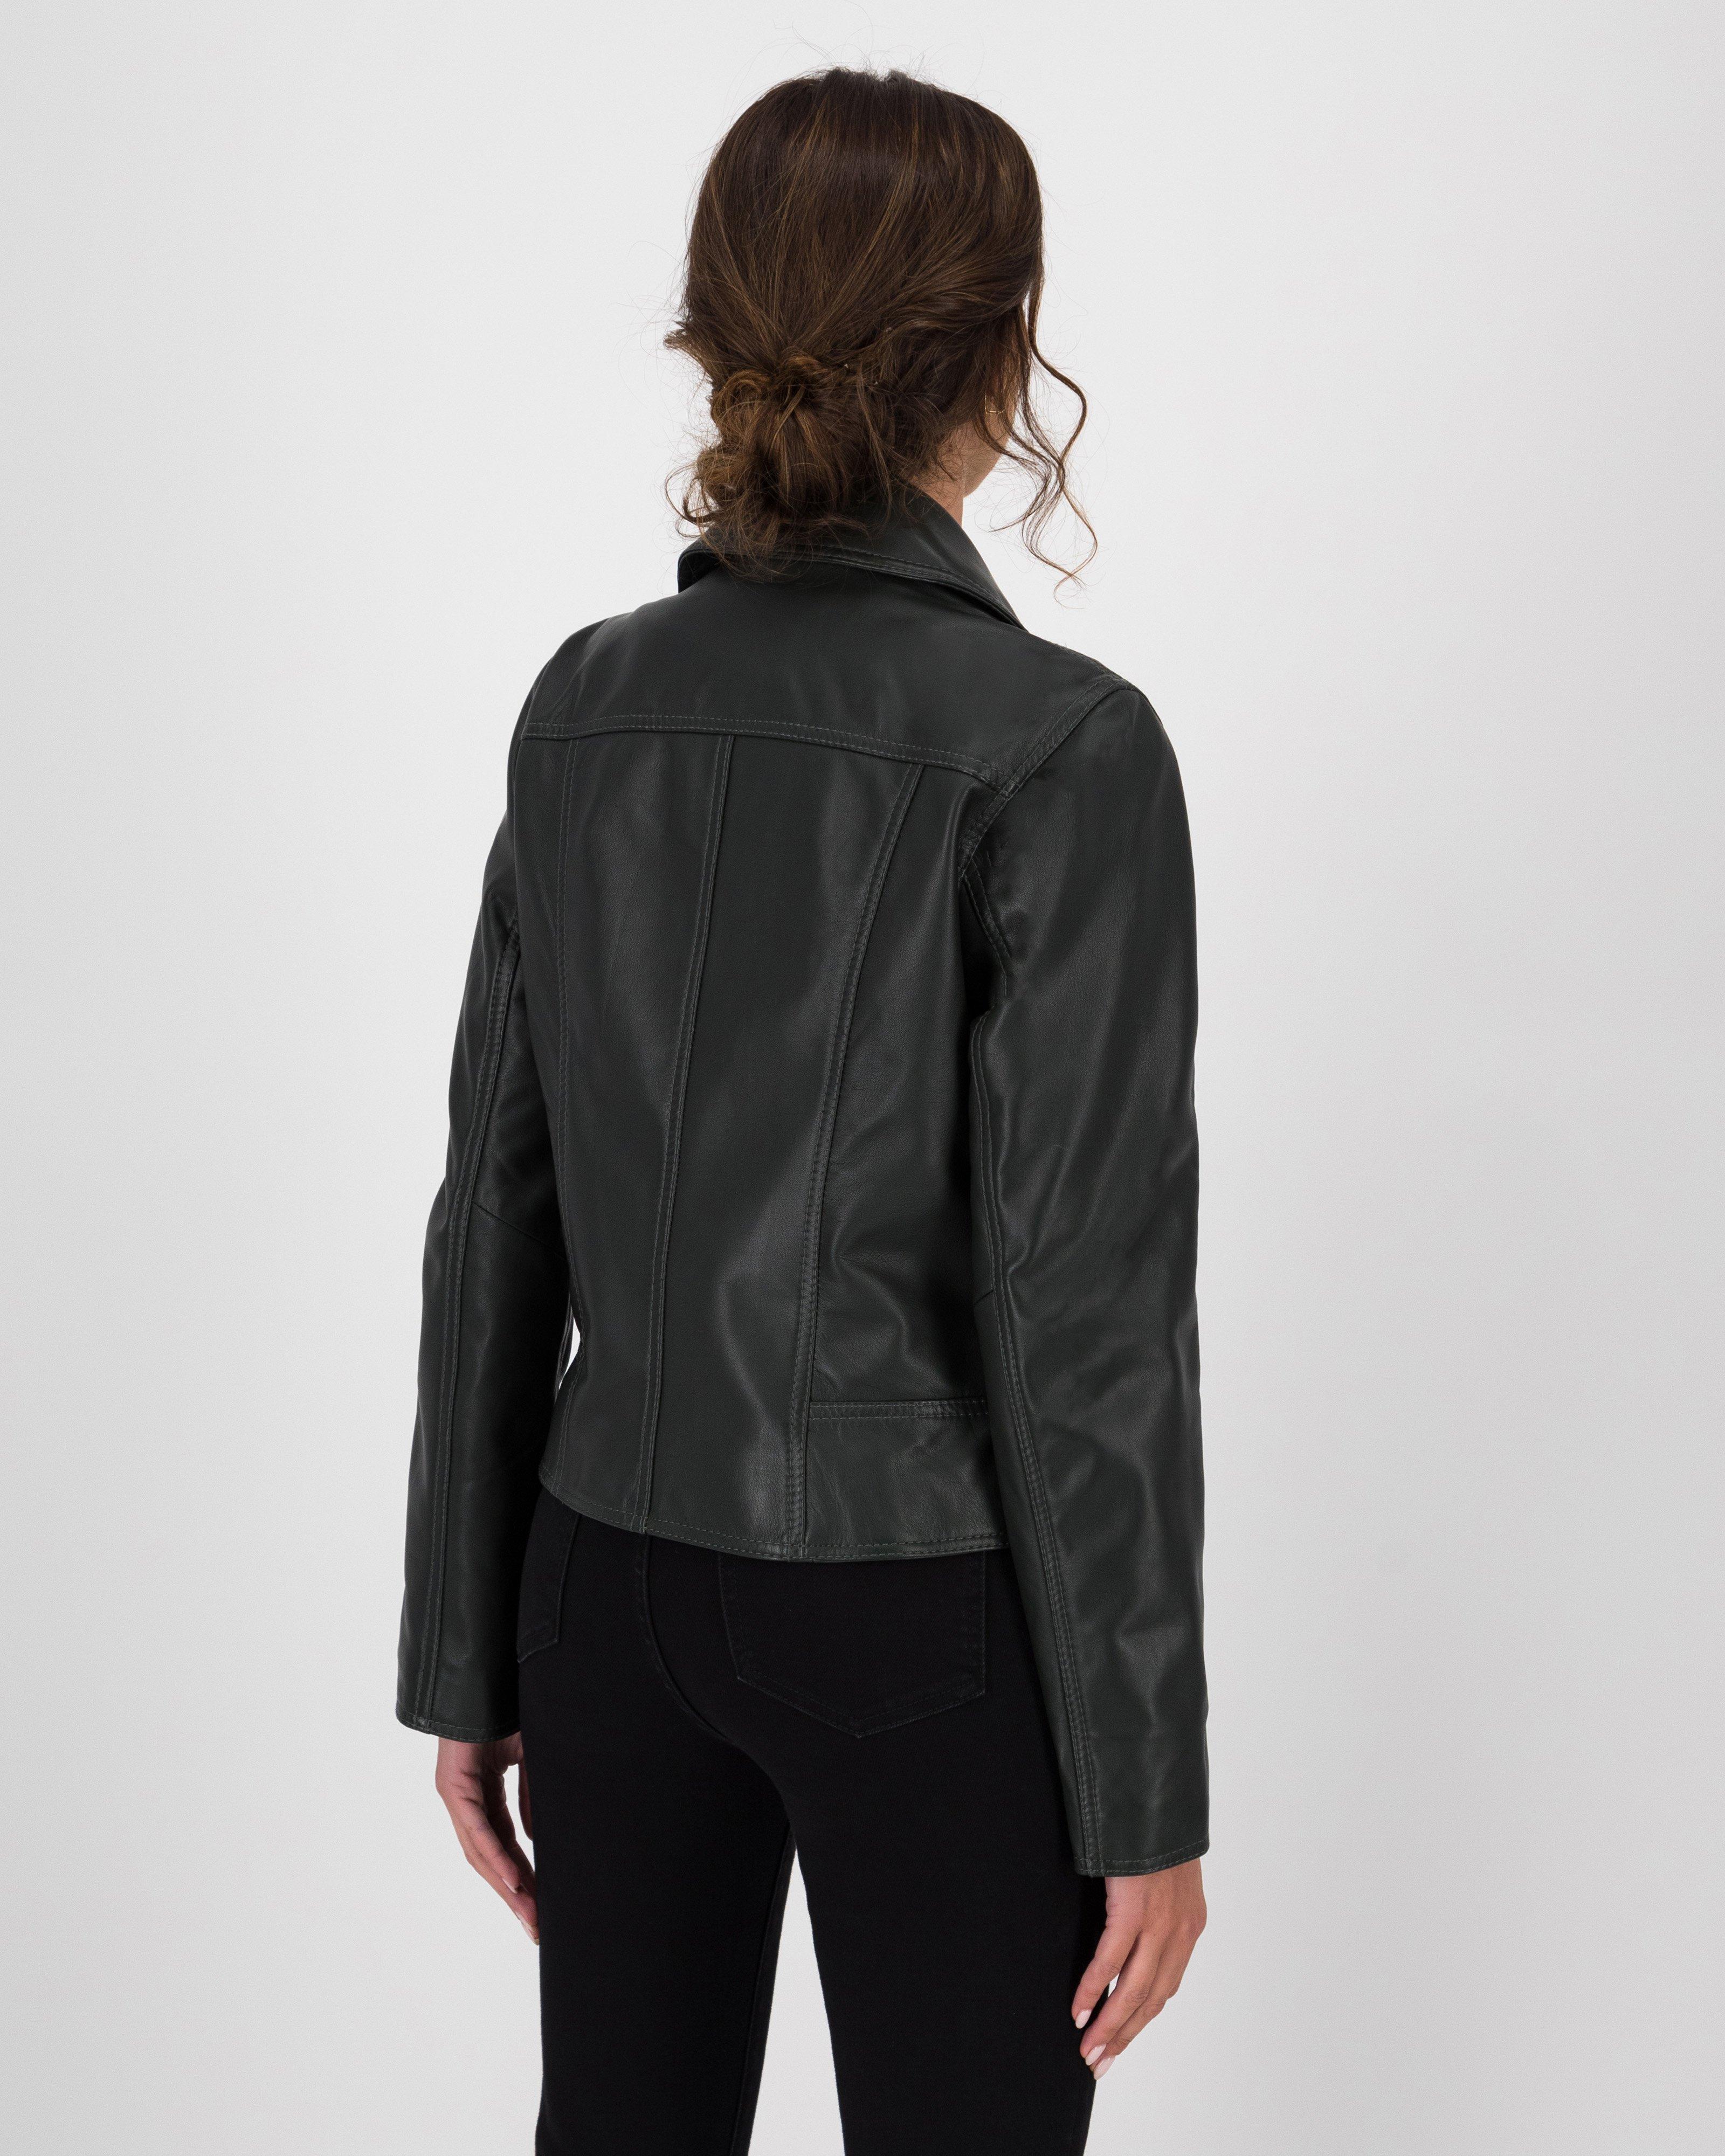 Poetry Noemie Biker Leather Jacket - Poetry Clothing Store